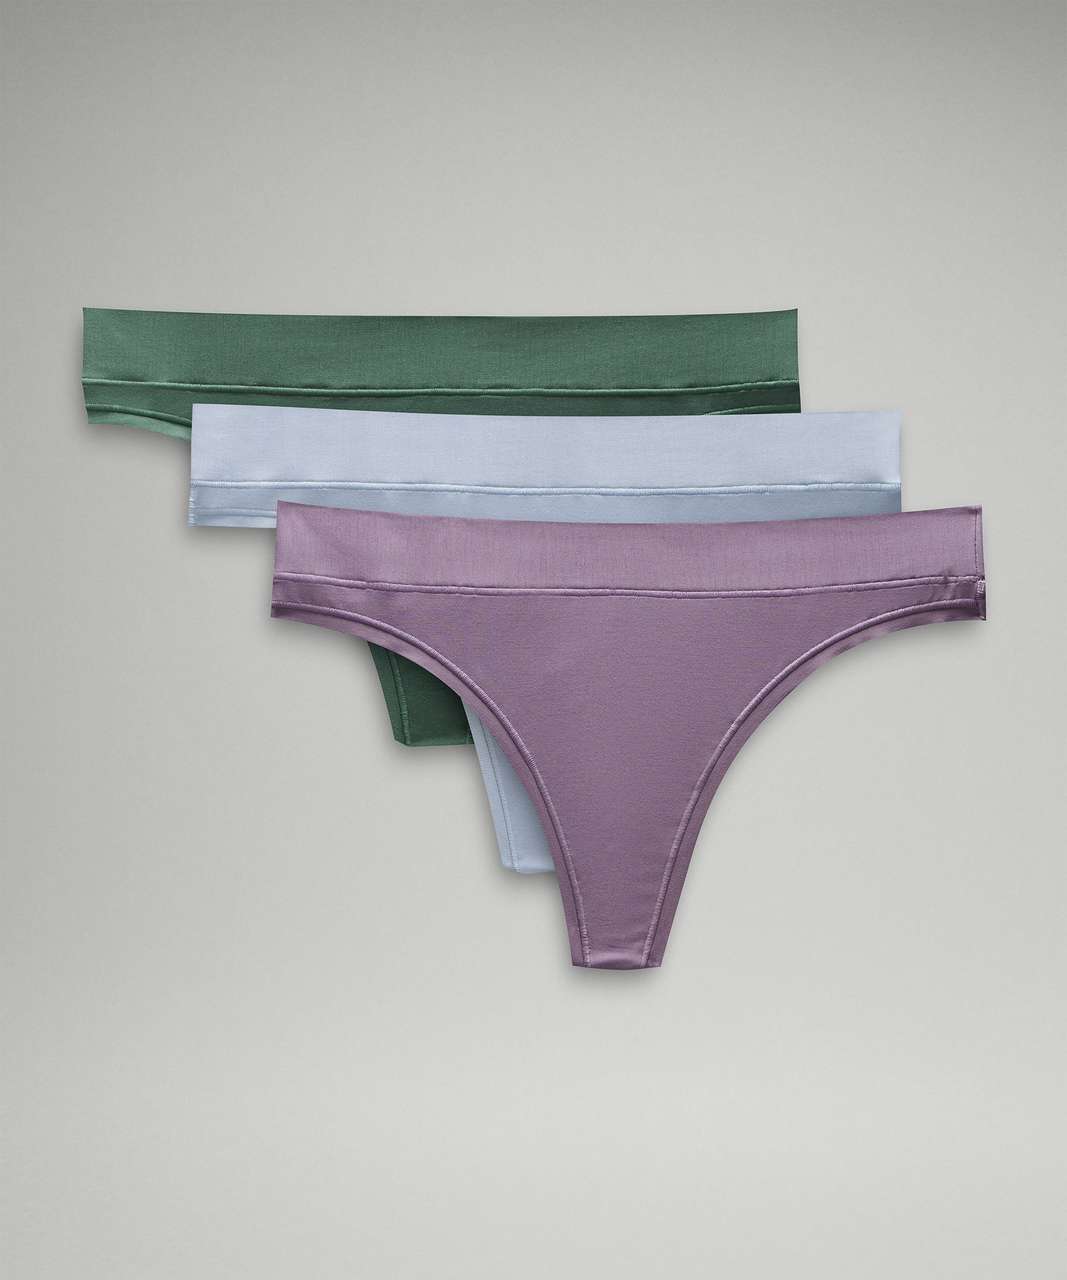 Lululemon athletica UnderEase Ribbed High-Waist Thong Underwear *3 Pack, Women's  Underwear